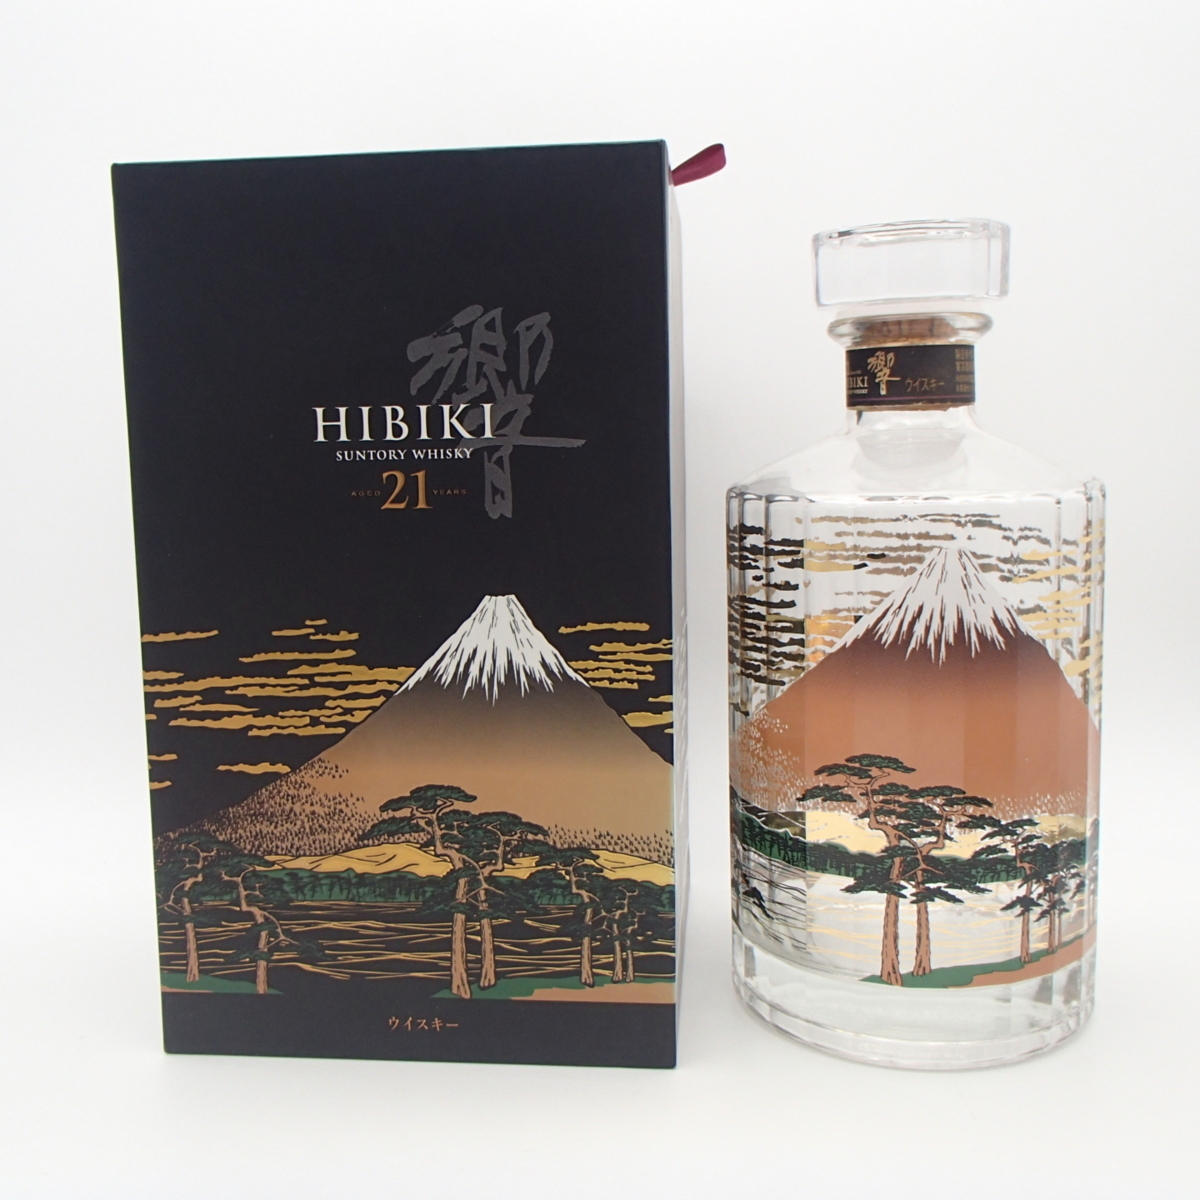 ◎空瓶 SUNTORY WHISKY HIBIKI / サントリー ウイスキー 響 21年 富士